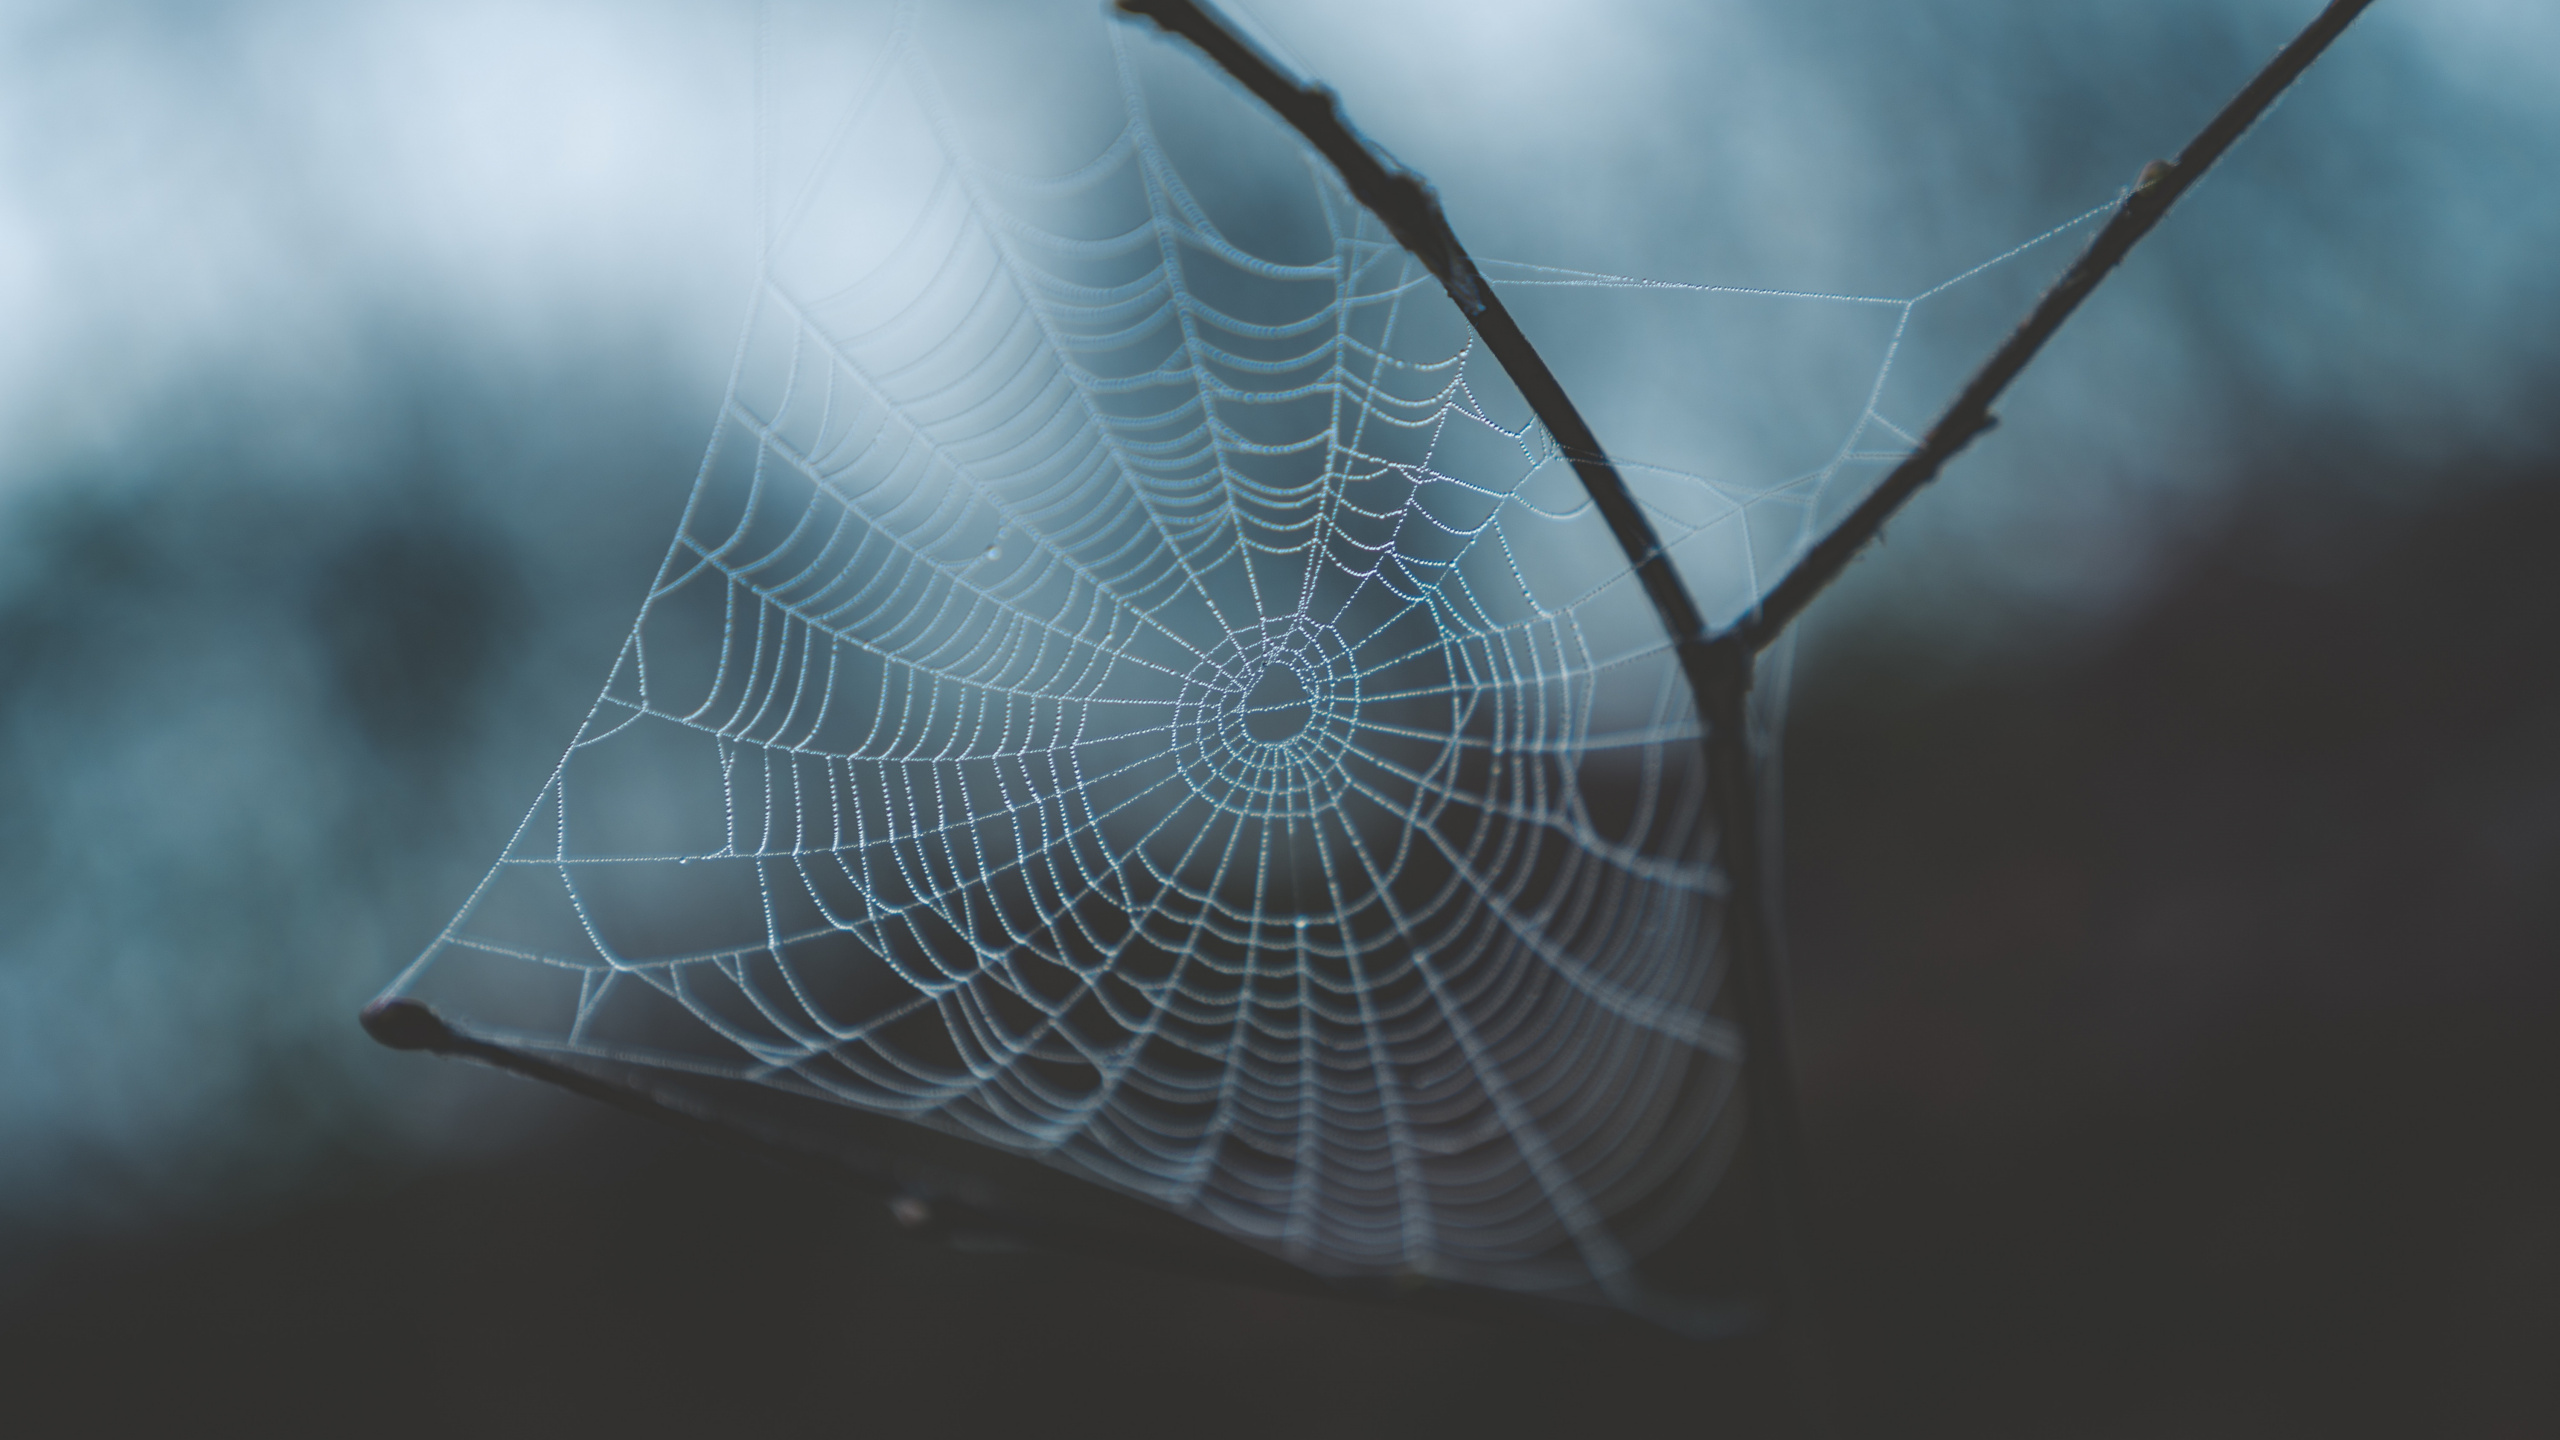 Spinnennetz, Wasser, Morgen, Branch, Blatt. Wallpaper in 2560x1440 Resolution